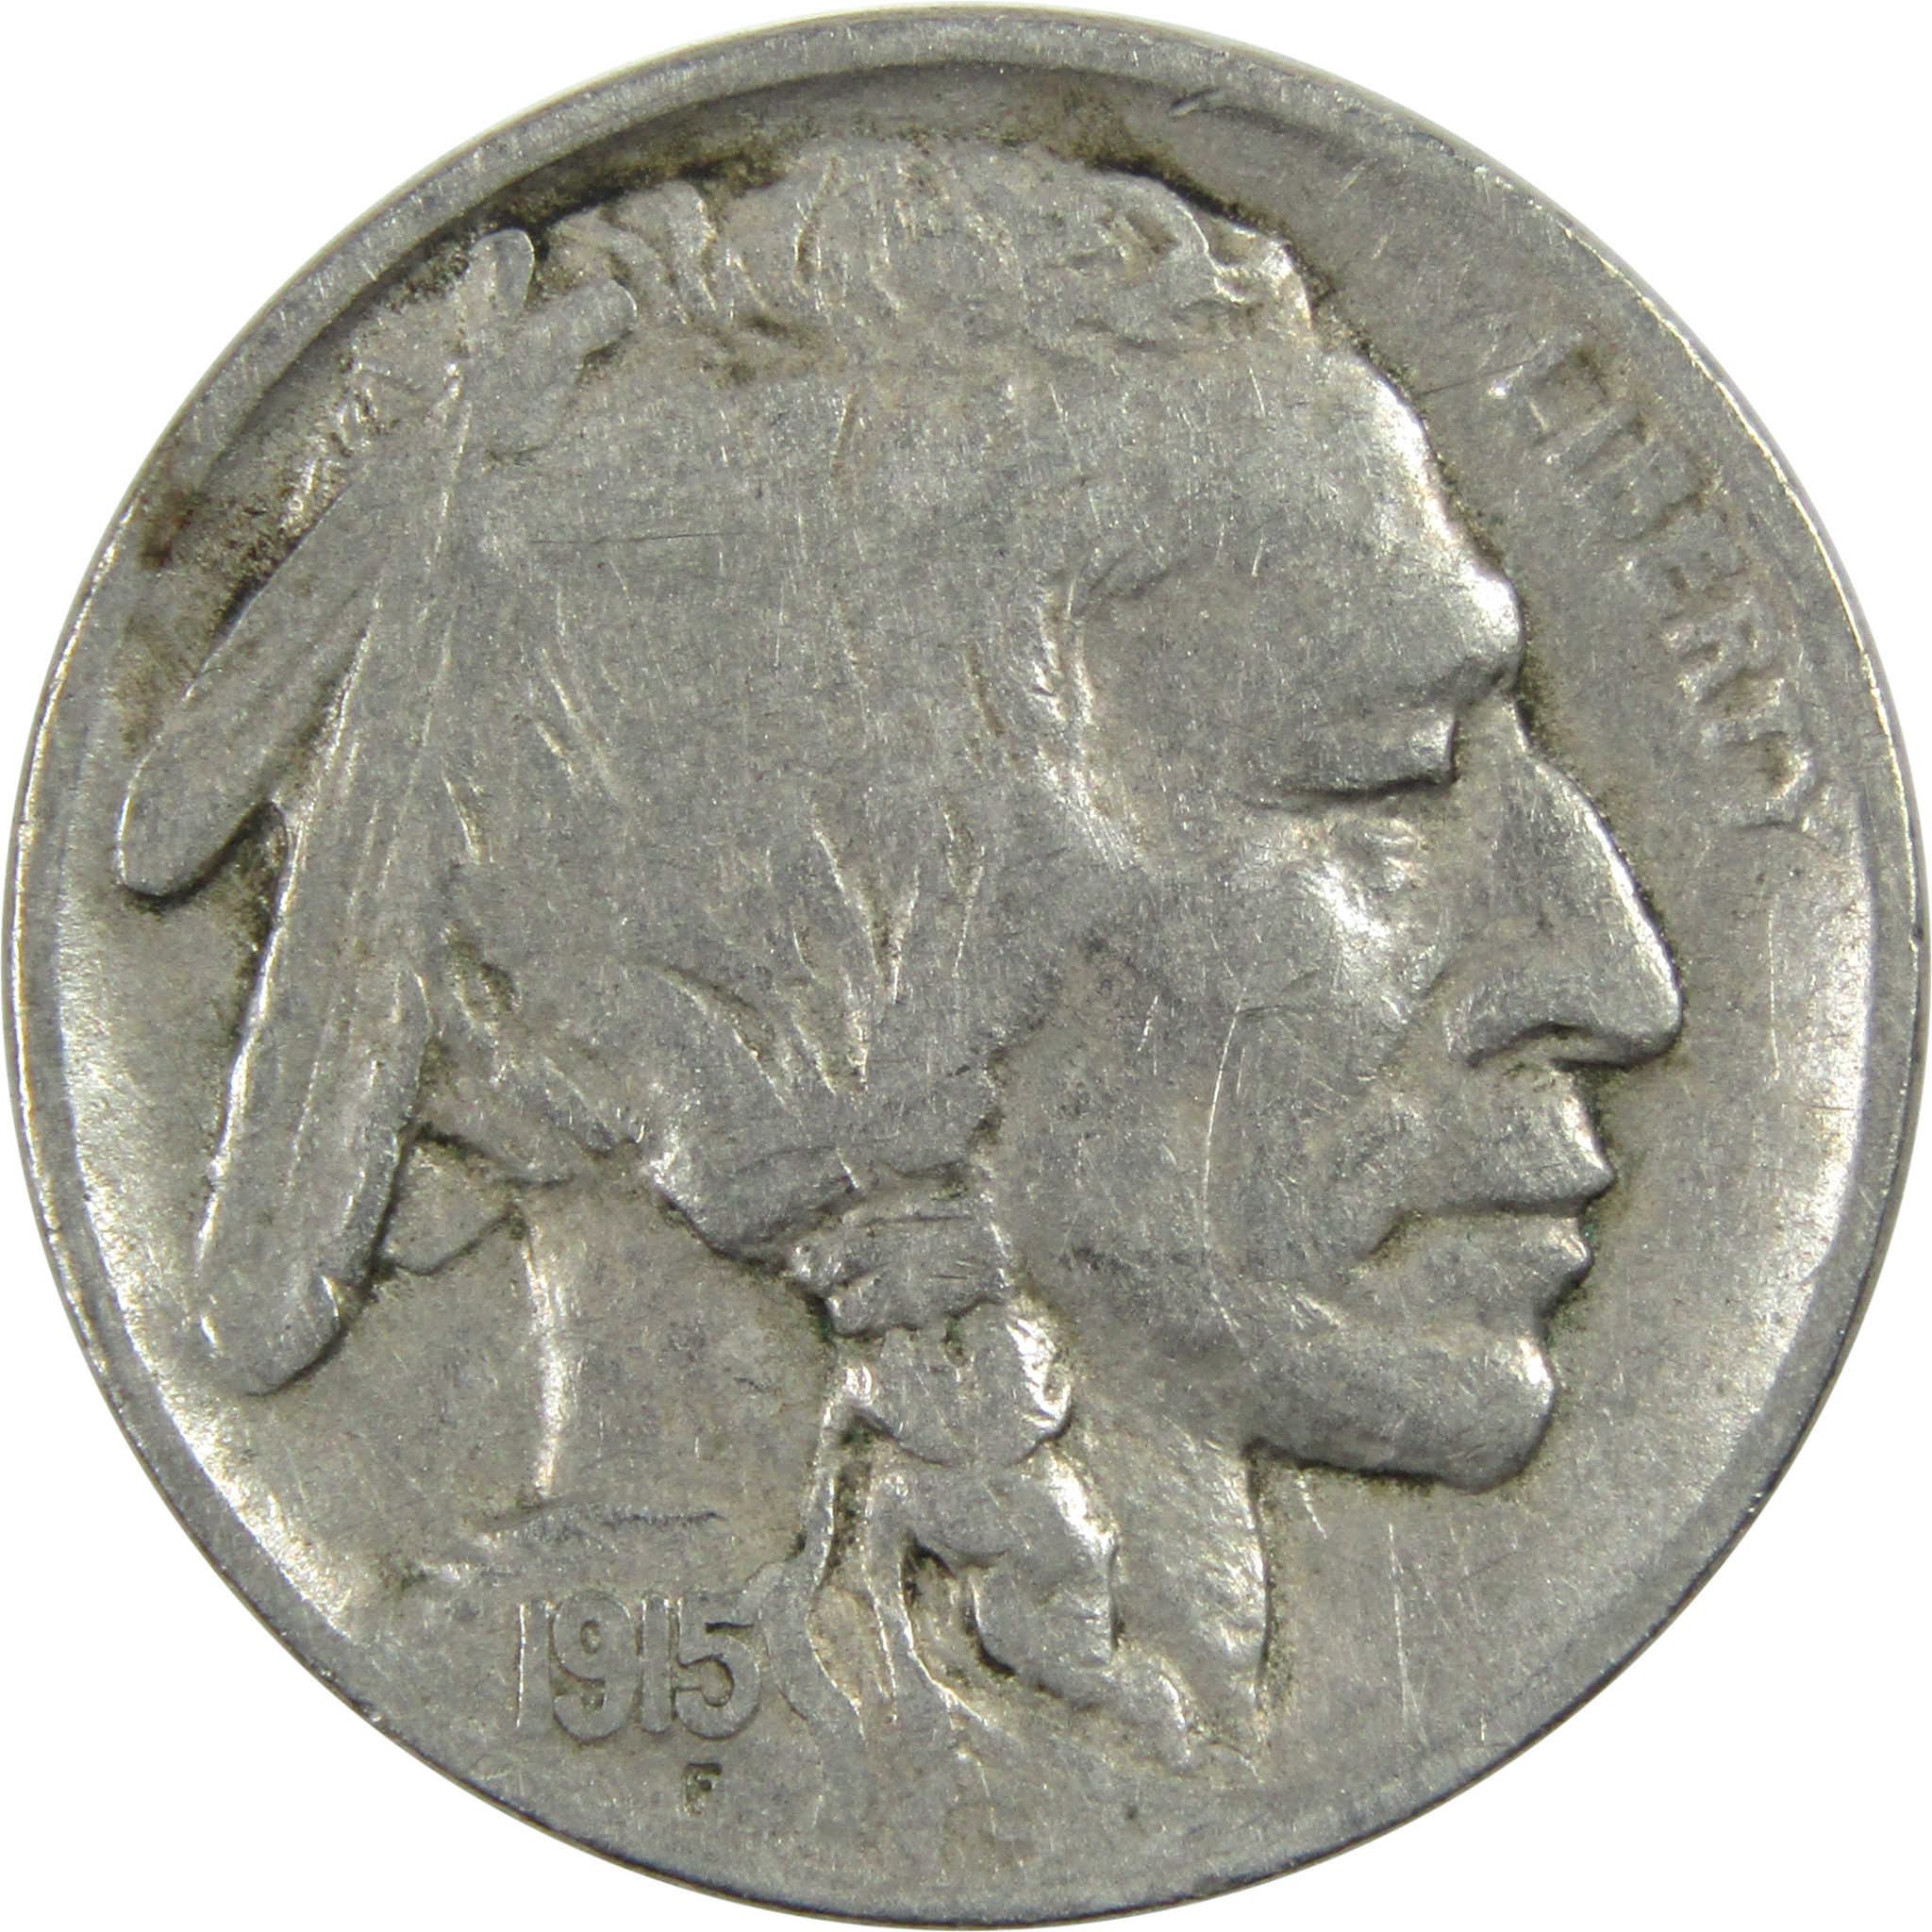 1915 Indian Head Buffalo Nickel F Fine 5c Coin SKU:I12979